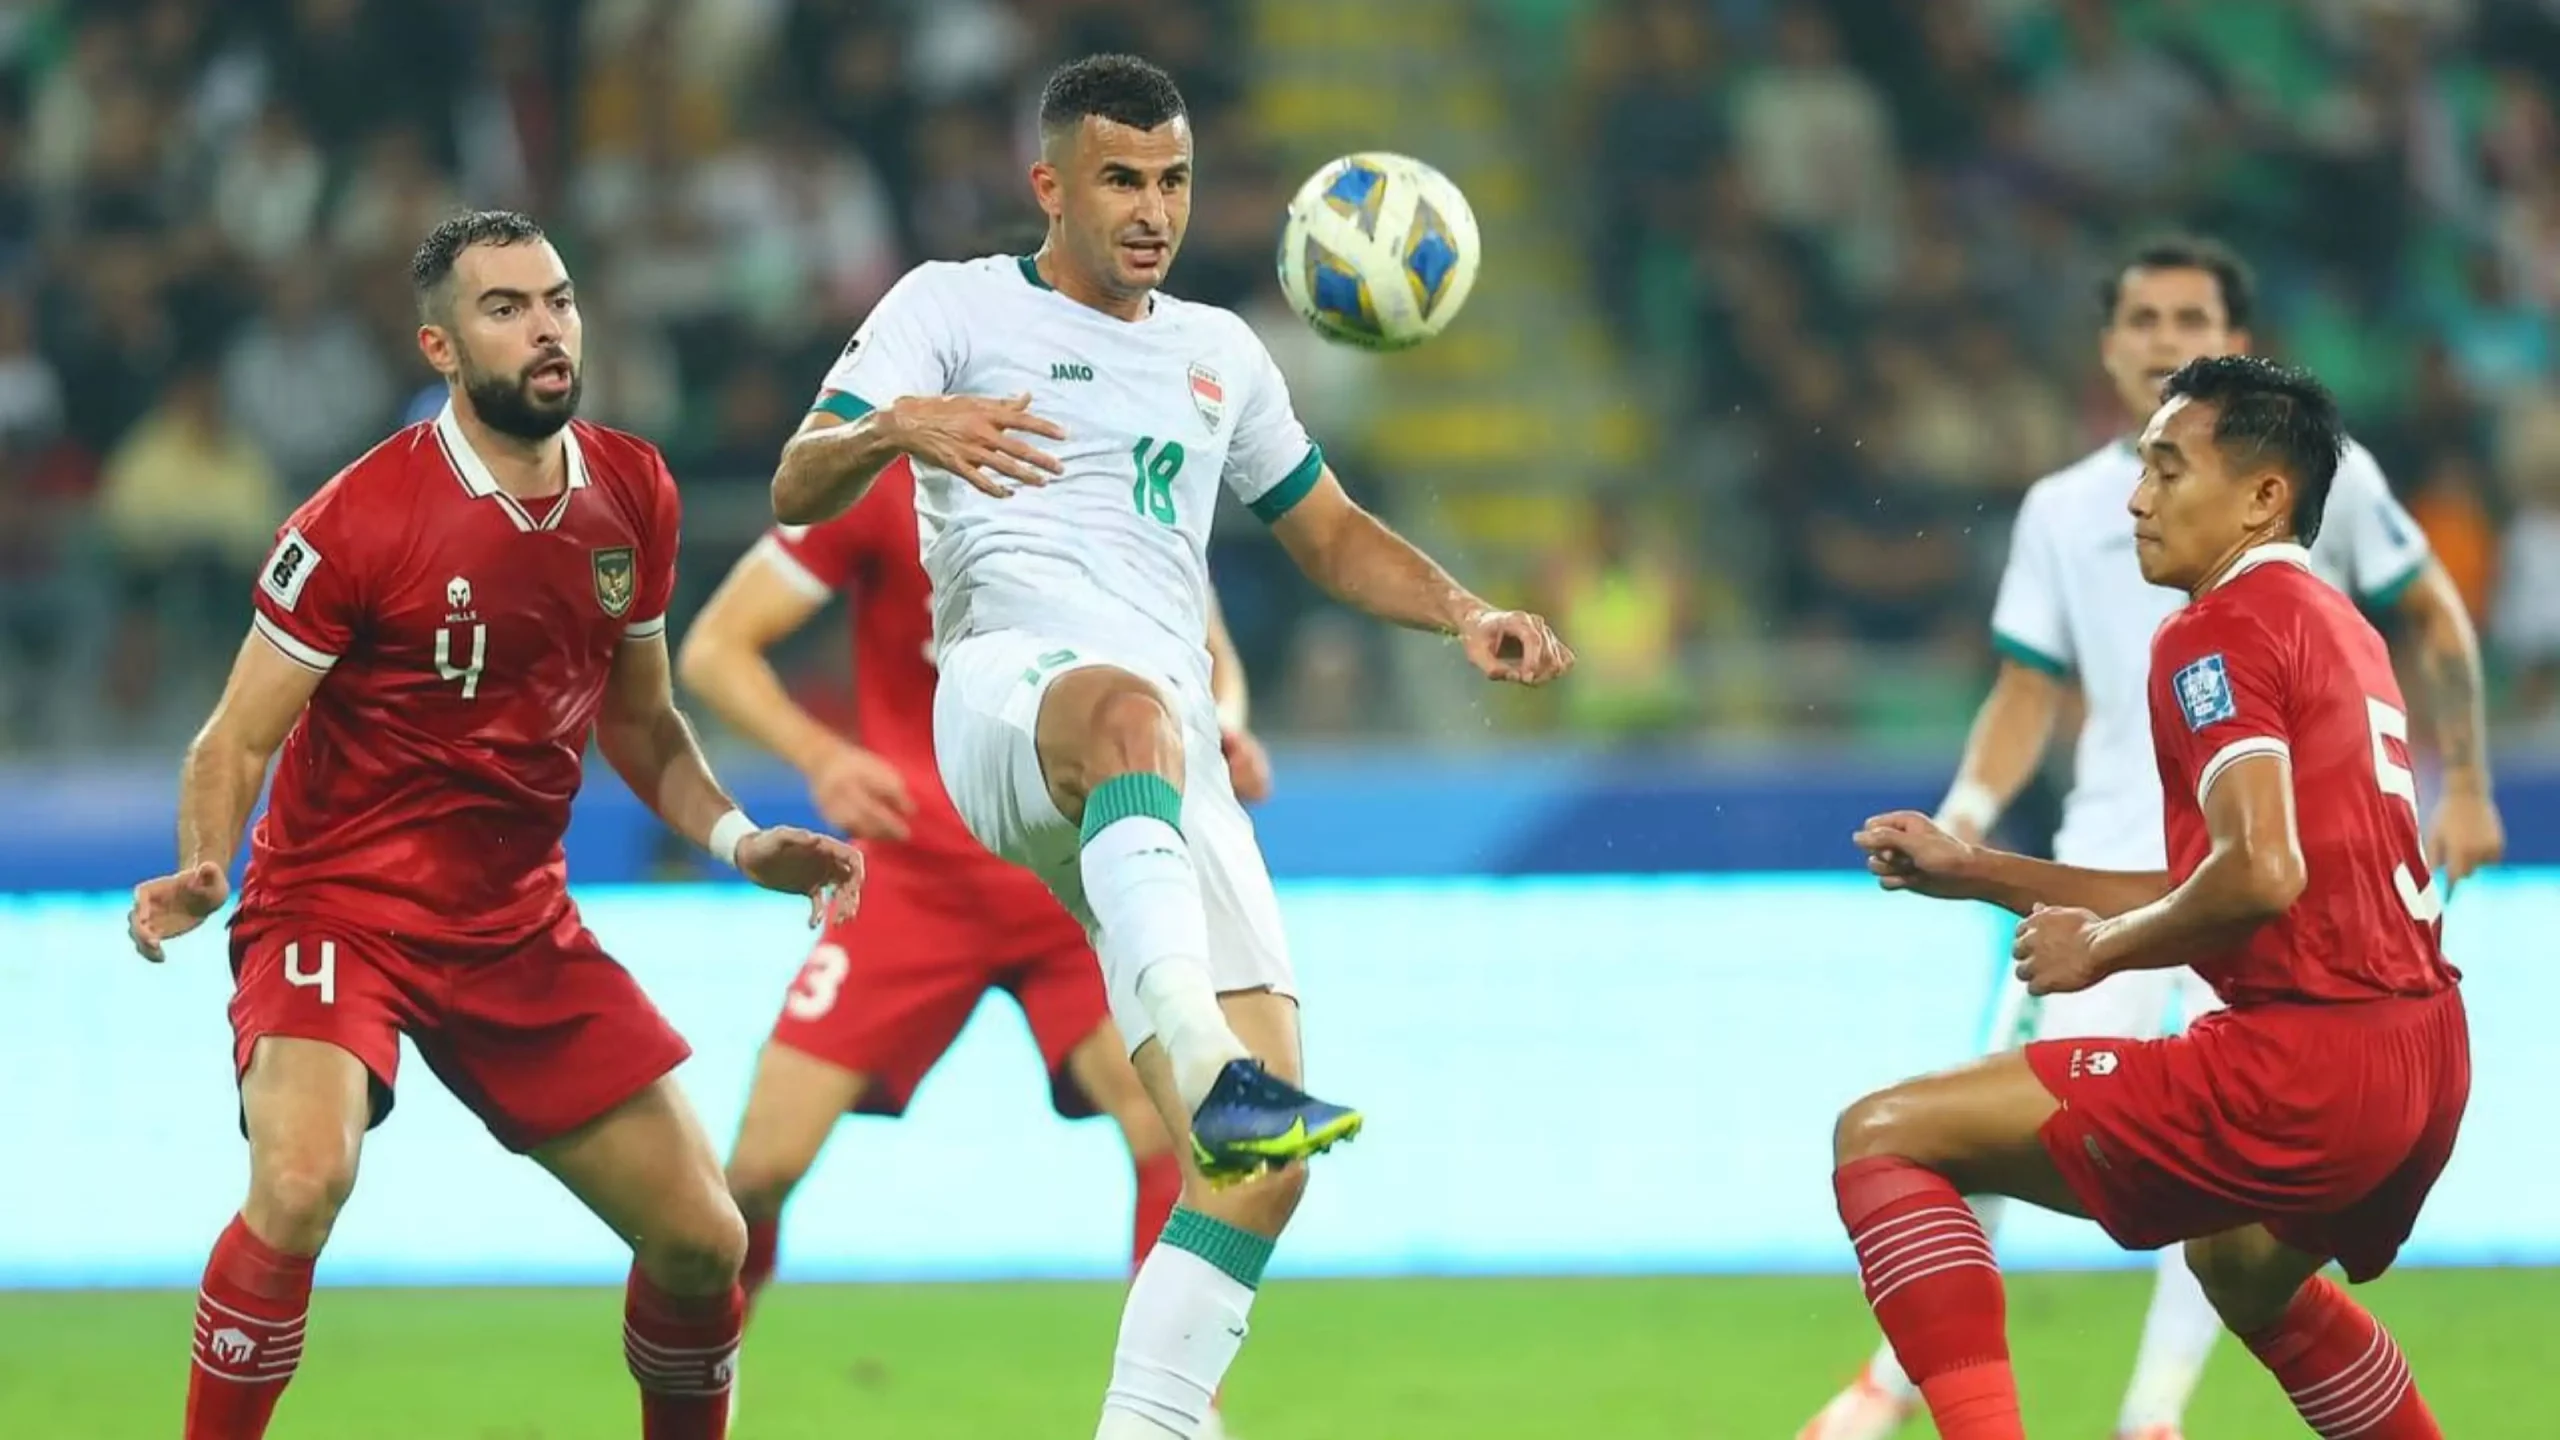 Berikut Jadwal dan Link Live Streaming Indonesia vs Irak di Piala Asia